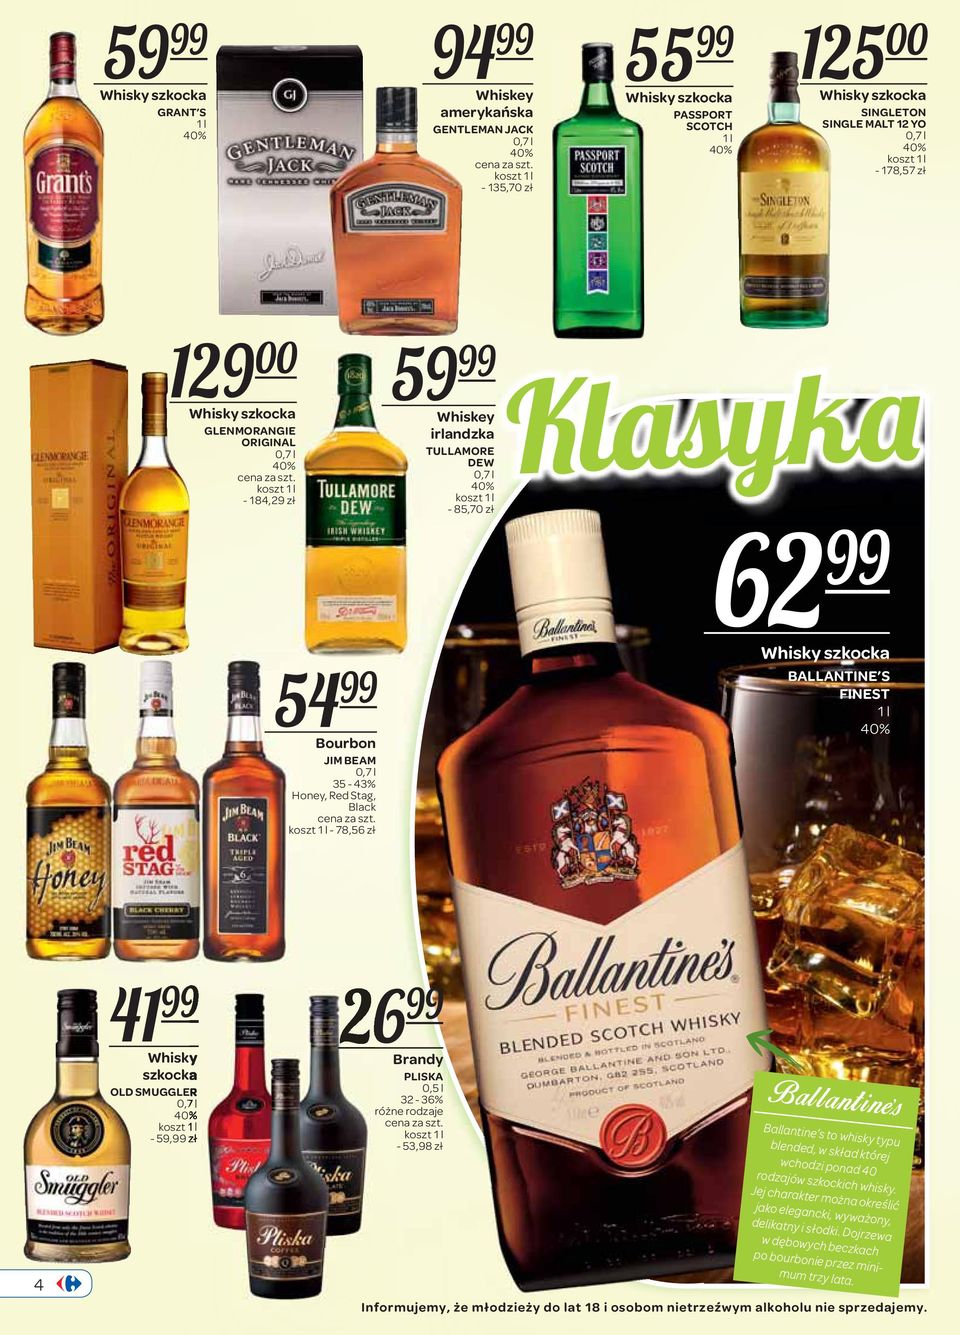 99 Whisky szkocka OLD SMUGGLER - 59,99 zł 26 99 Brandy PLISKA 32-36% - 53,98 zł Ballantine s Ballantine s to whisky typu blended, w skład której wchodzi ponad 40